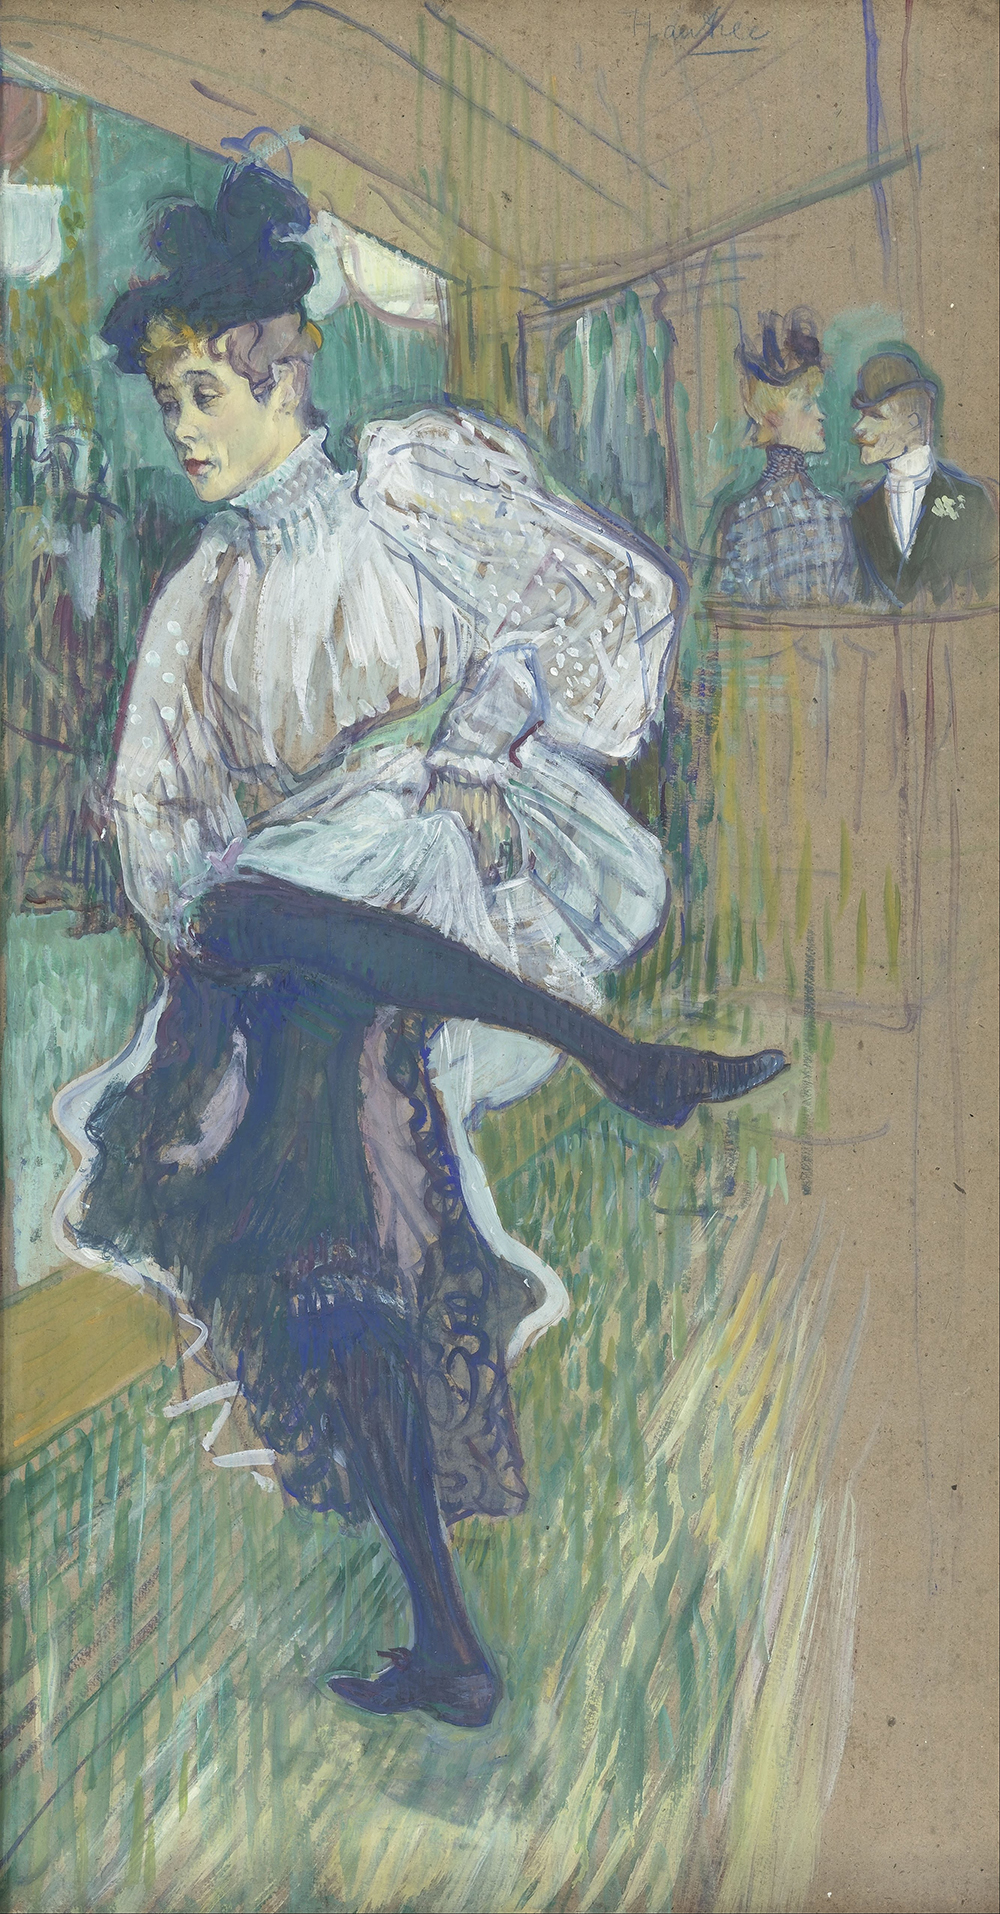 Jane Avril Dancing, by Henri de Toulouse-Lautrec, c. 1892.